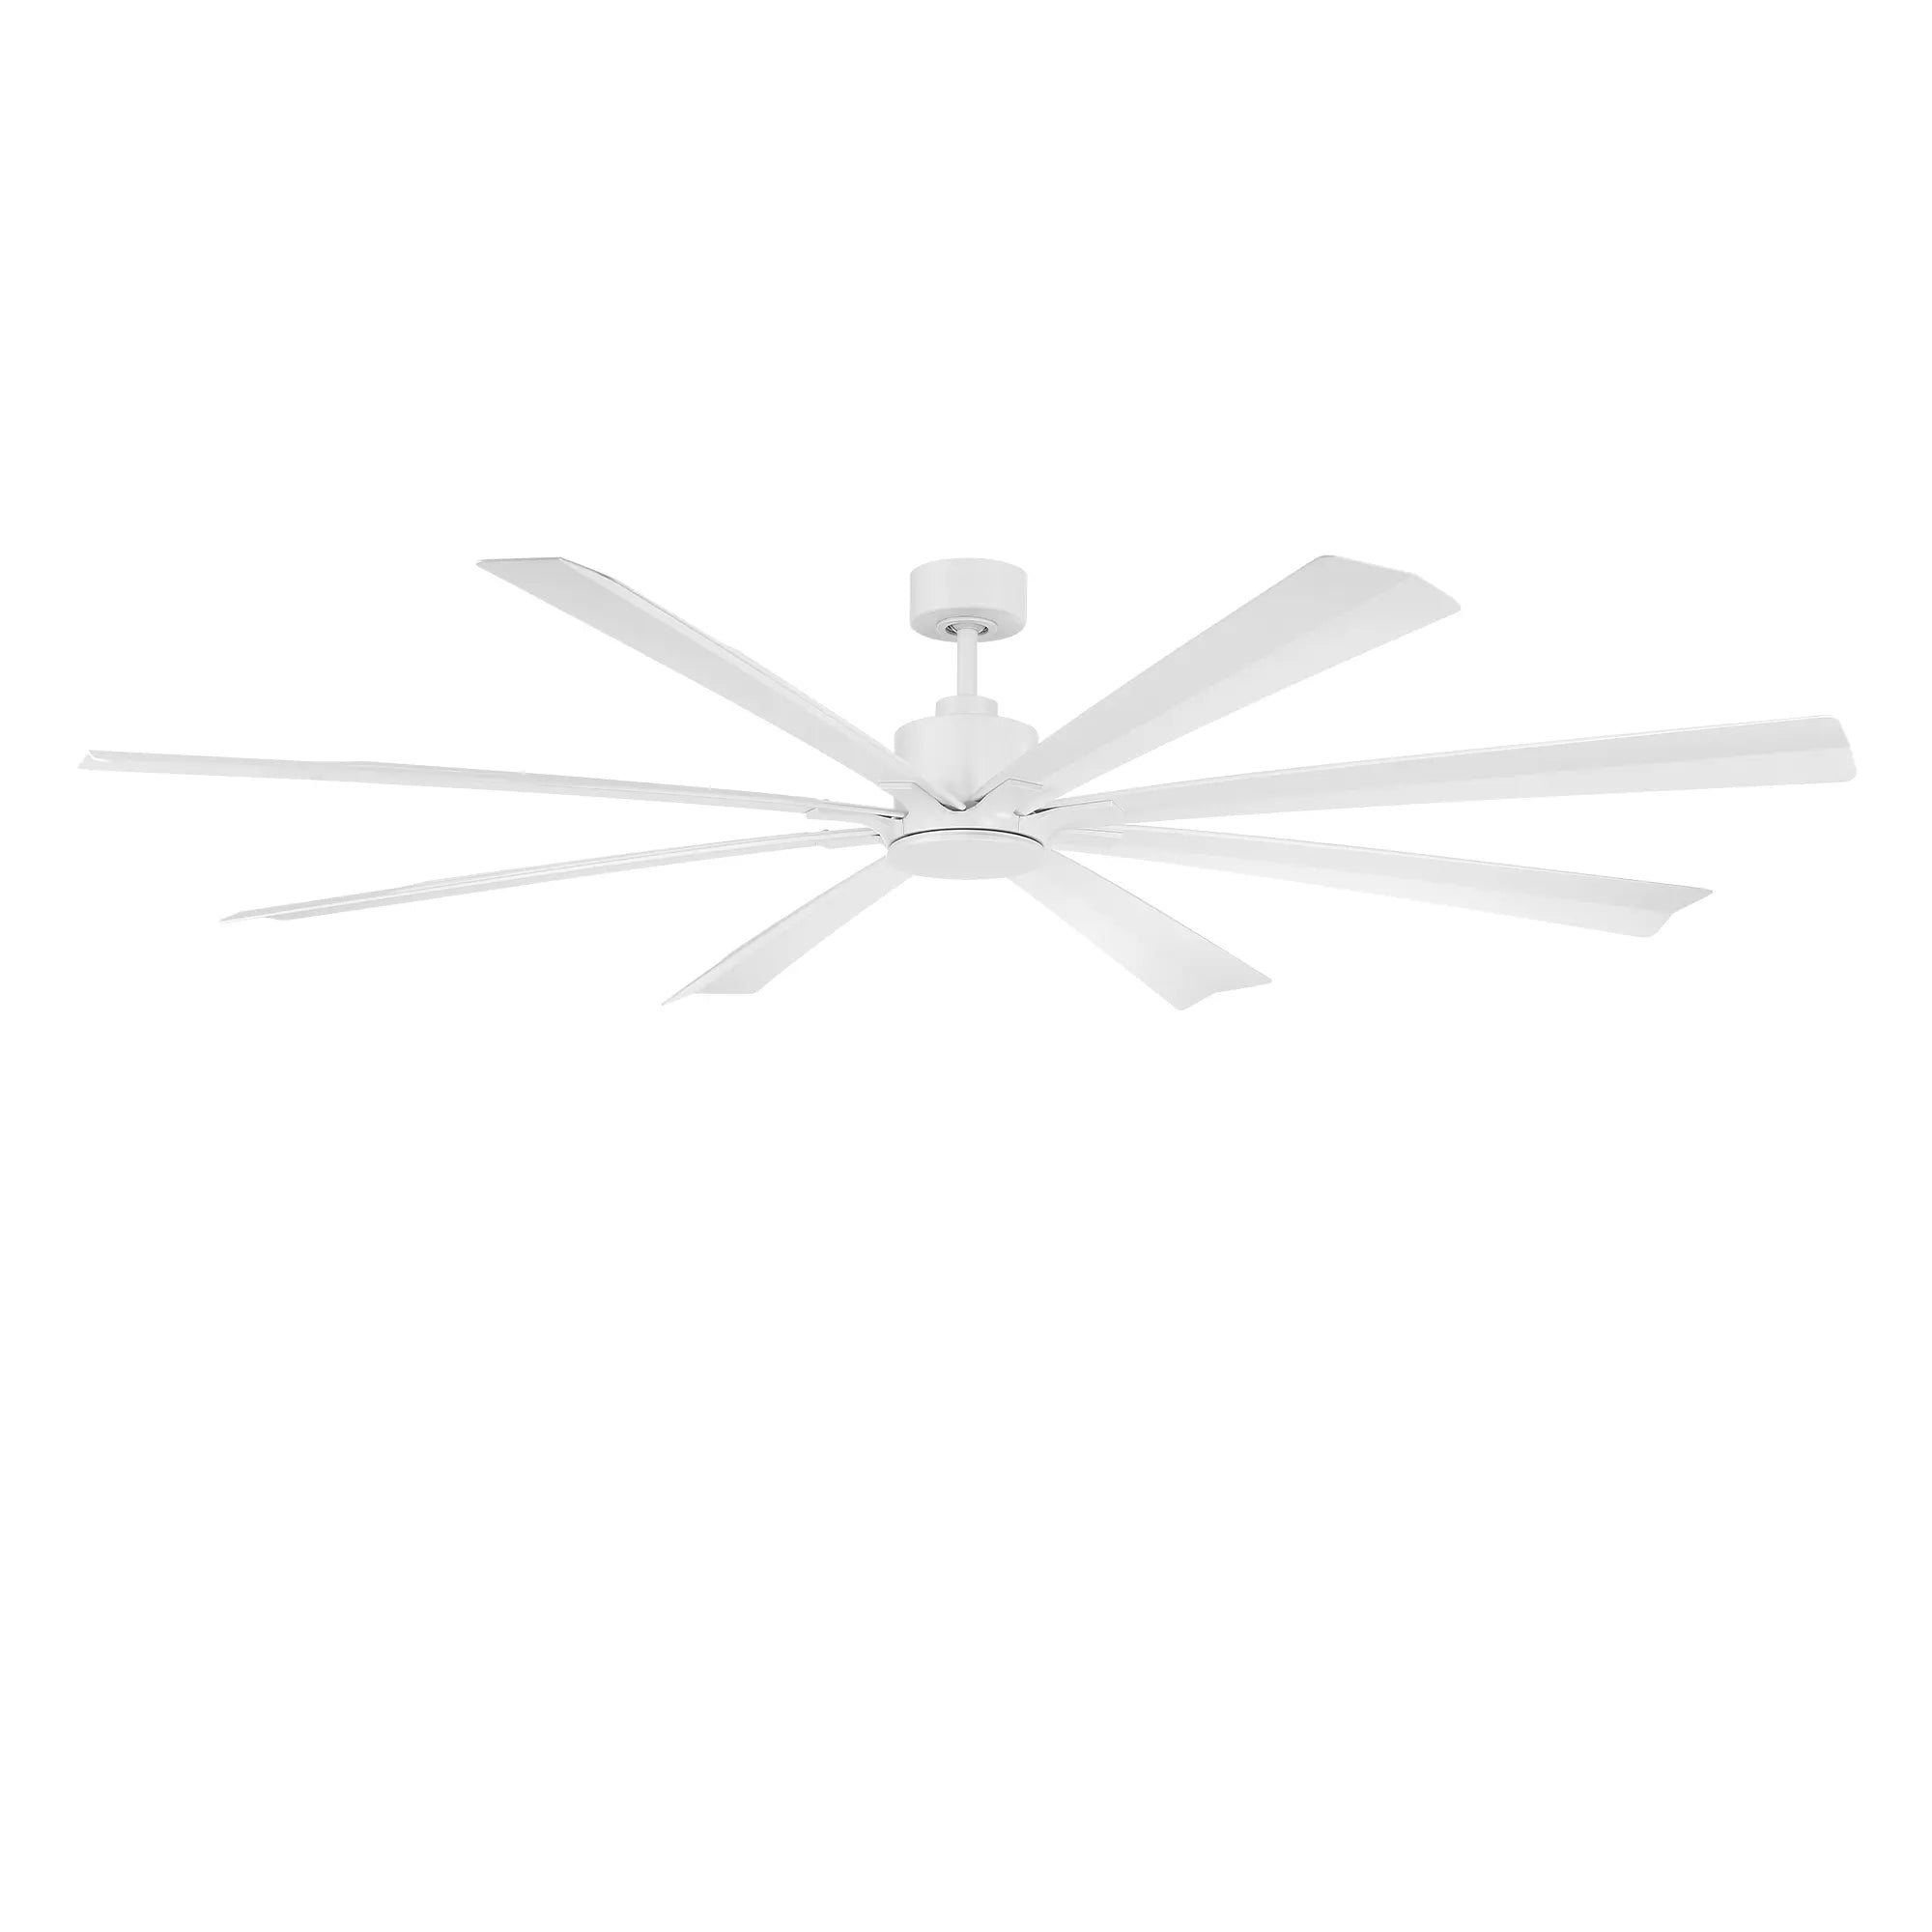 Size Matters Indoor/Outdoor 8-Blade 84" Smart Ceiling Fan